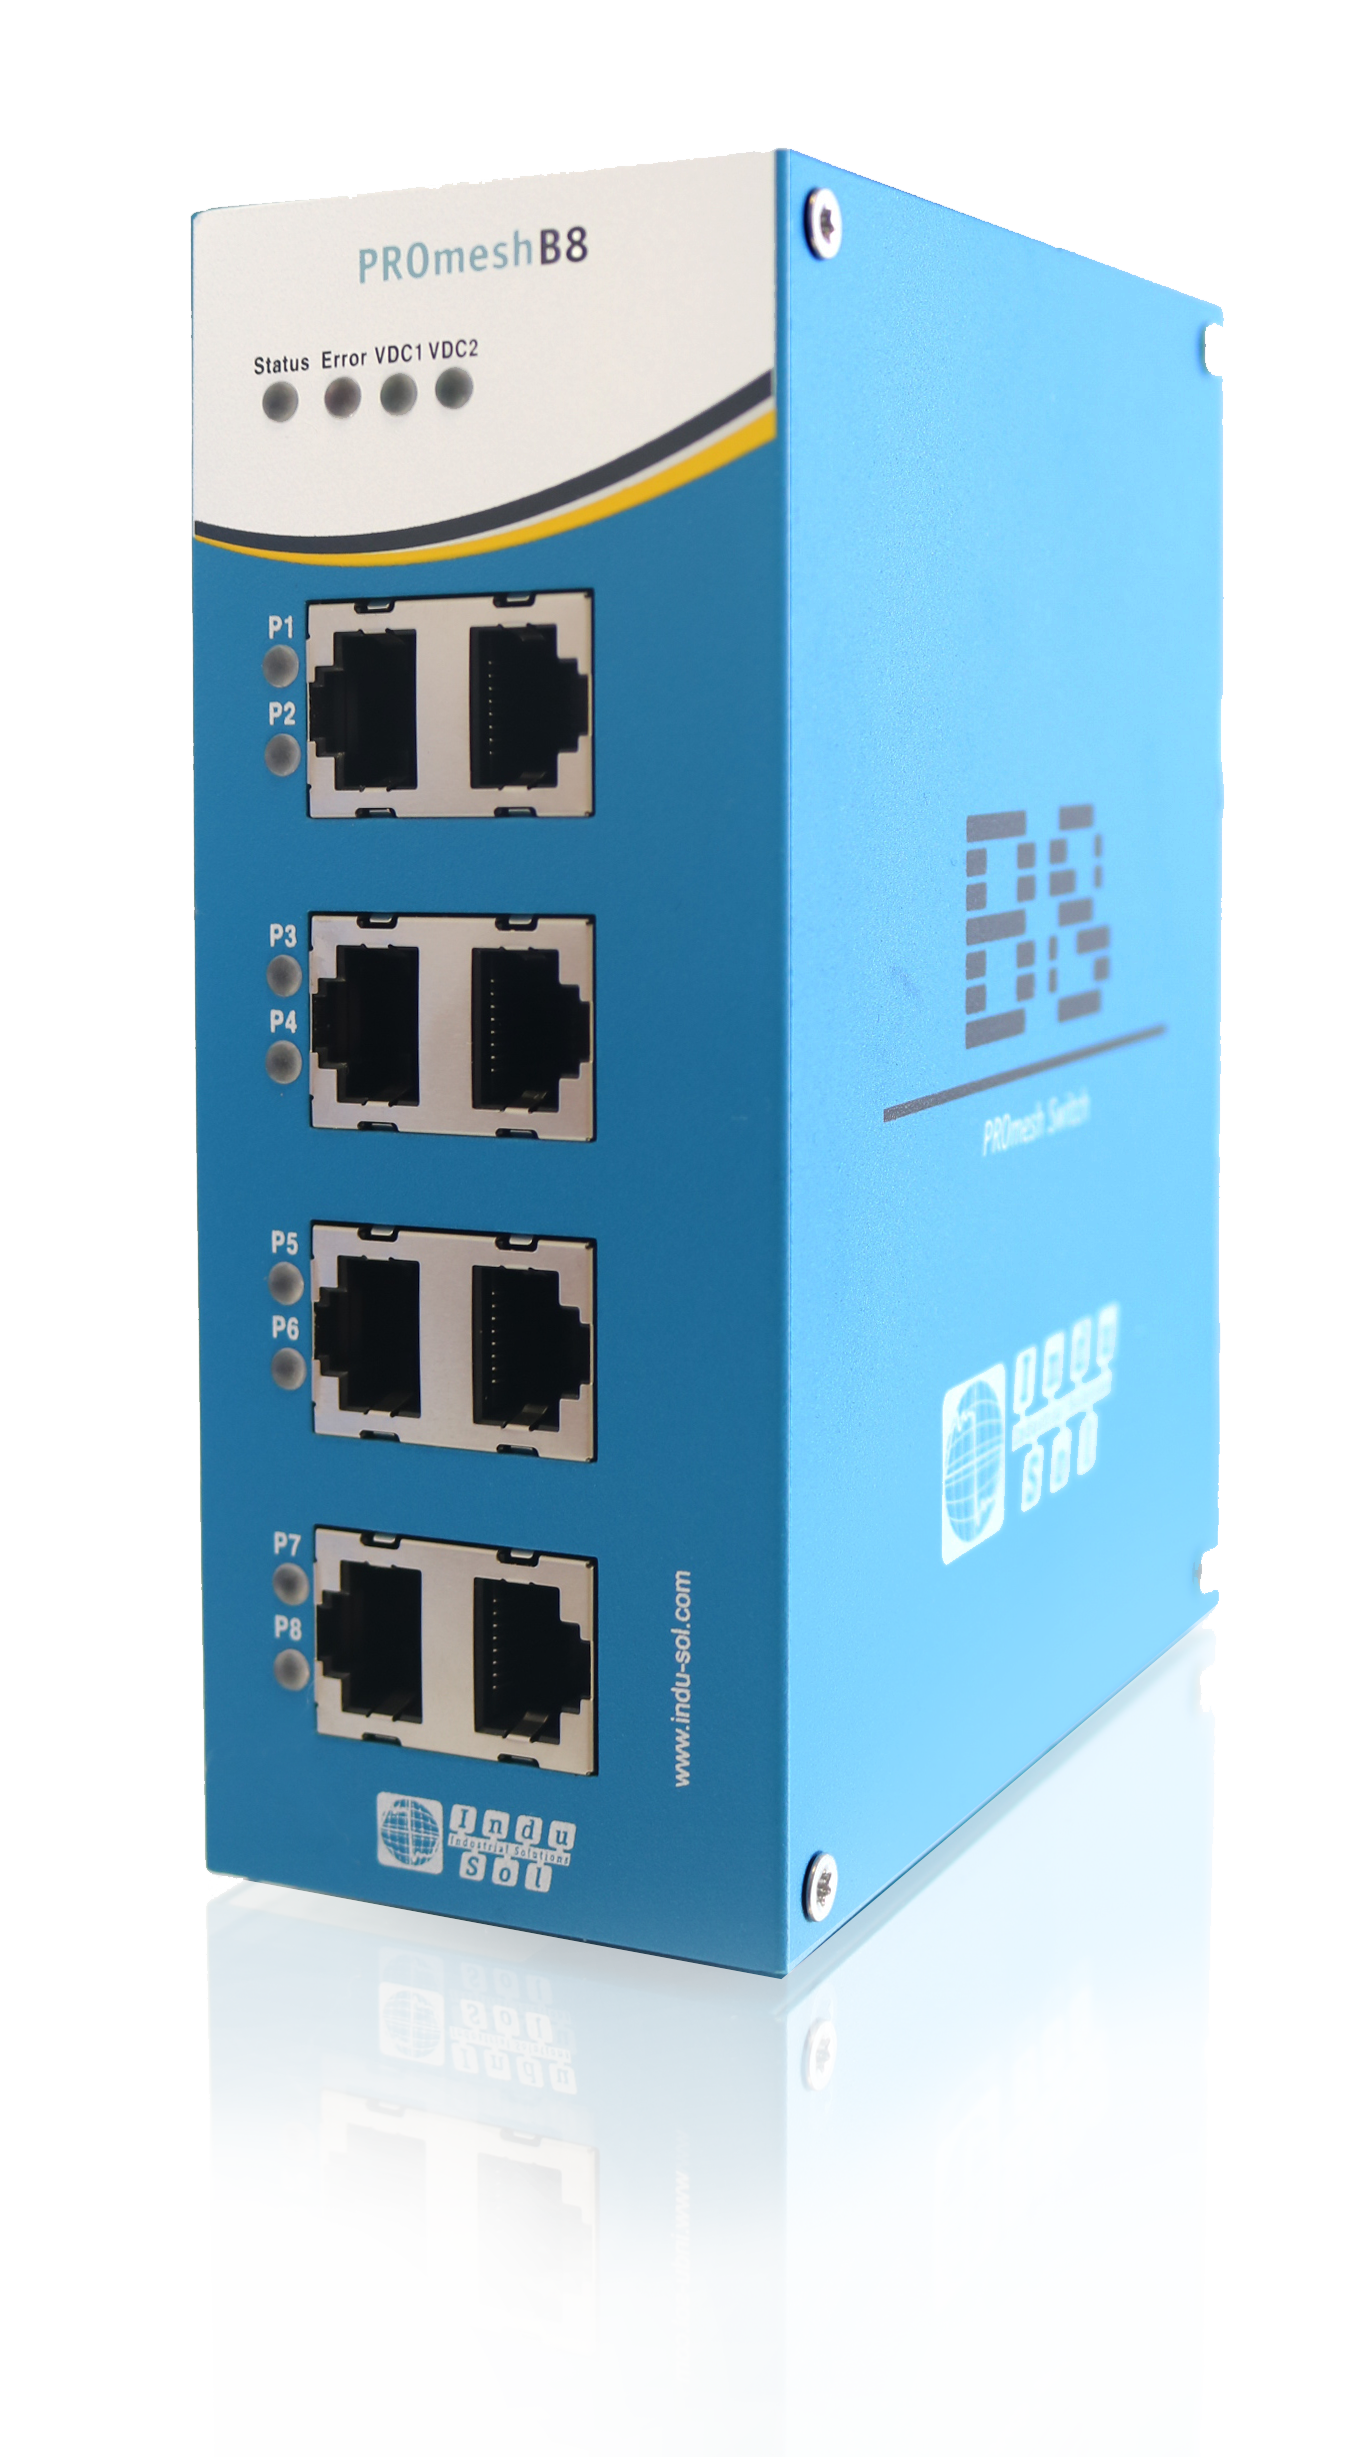 Sicherer Industrie-Switch mit Profinet und Ethernet/IP